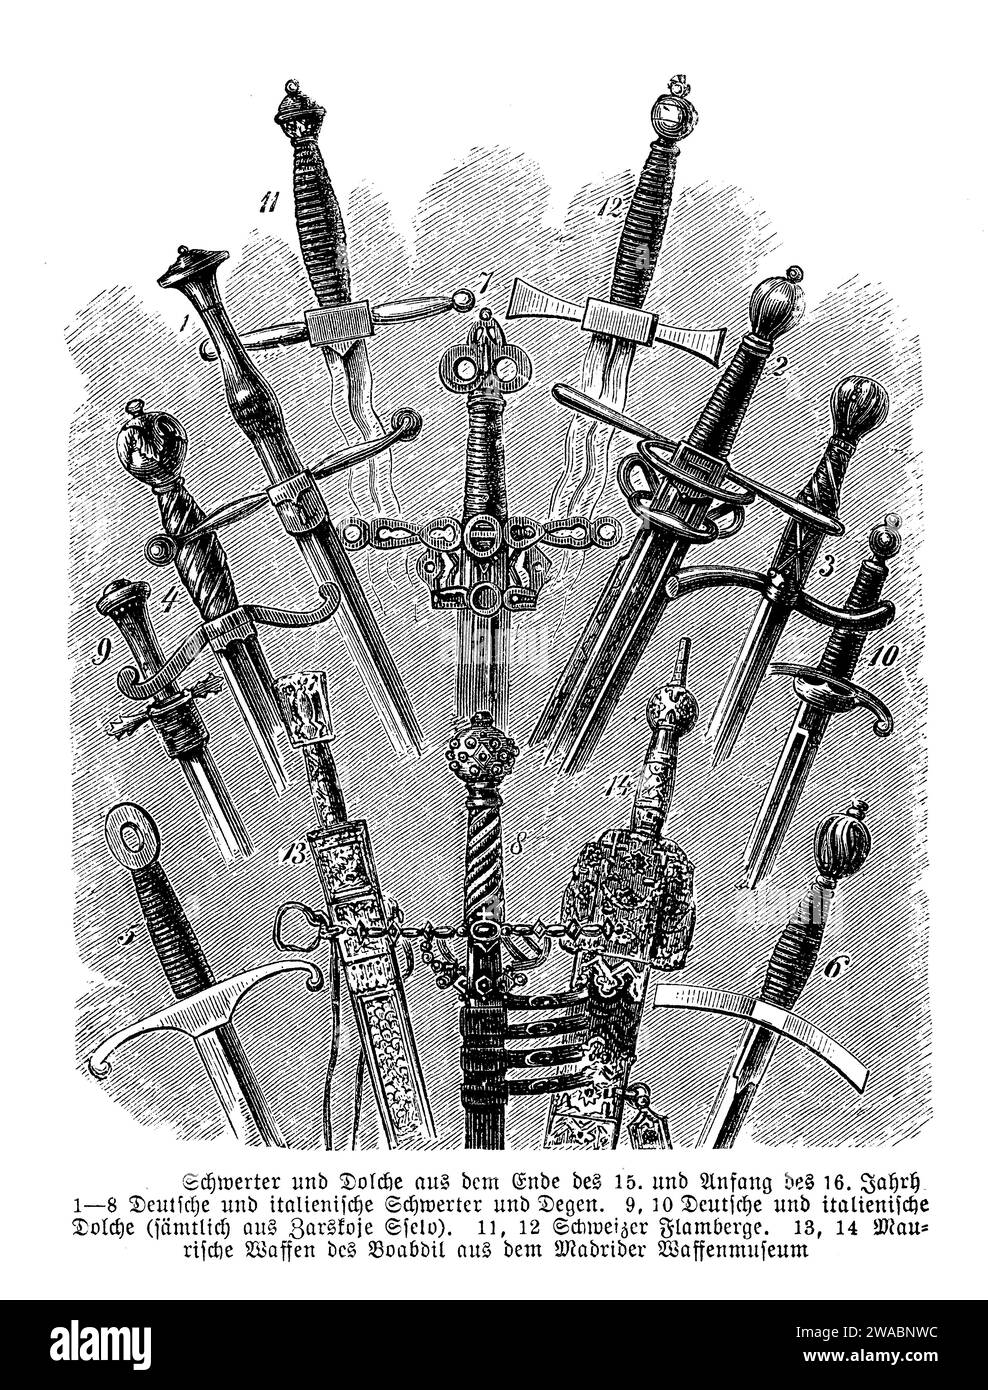 Beeindruckende Trophäe europäischer Messer und Schwerter aus dem 15. Bis 16. Jahrhundert aus dem Armeemuseum von Madrid Stockfoto